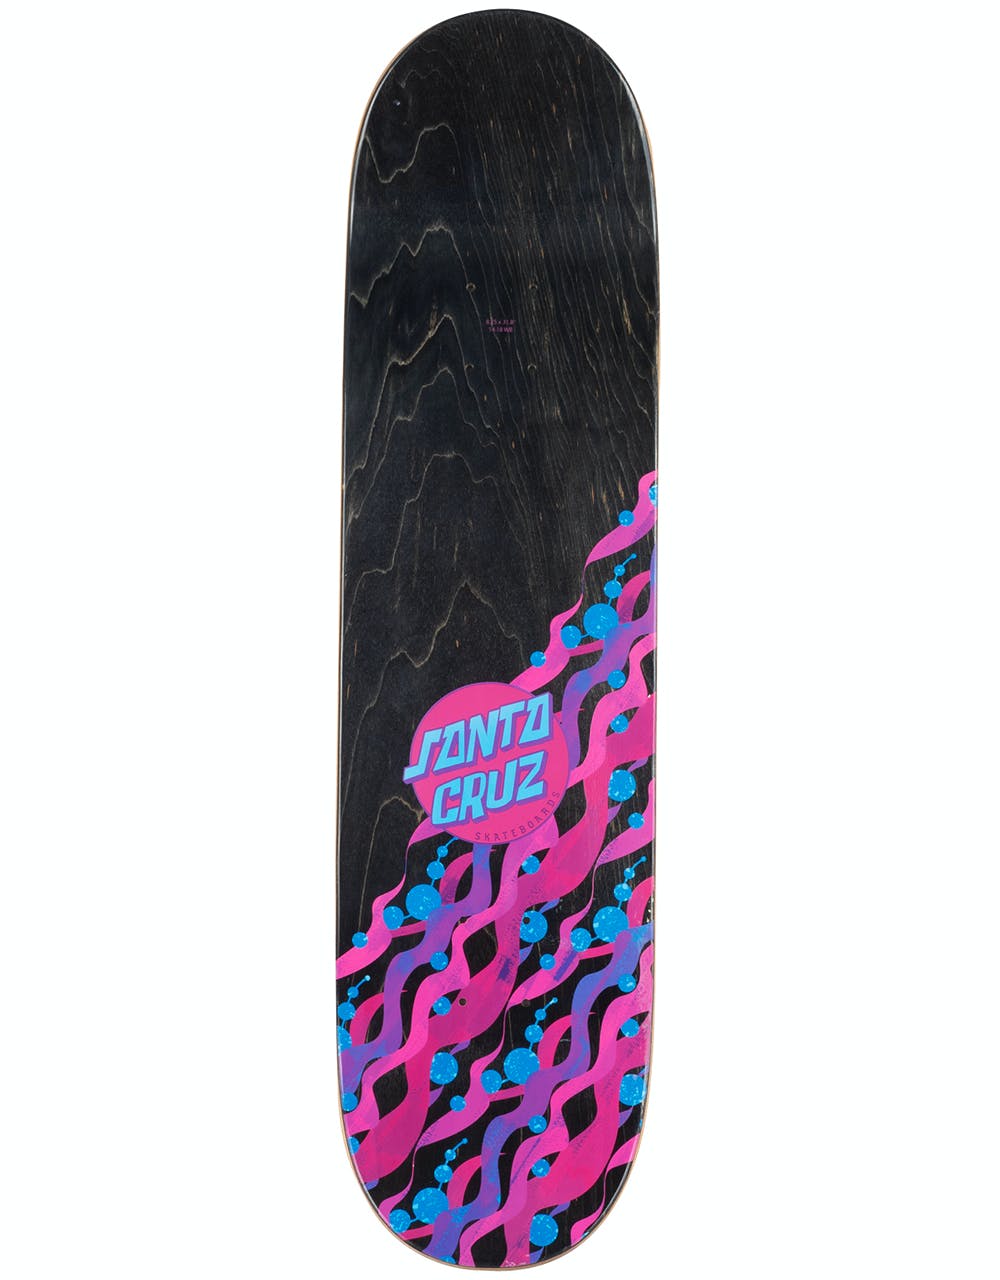 Santa Cruz x SpongeBob Bikini Bottom Skateboard Deck - 8.25"